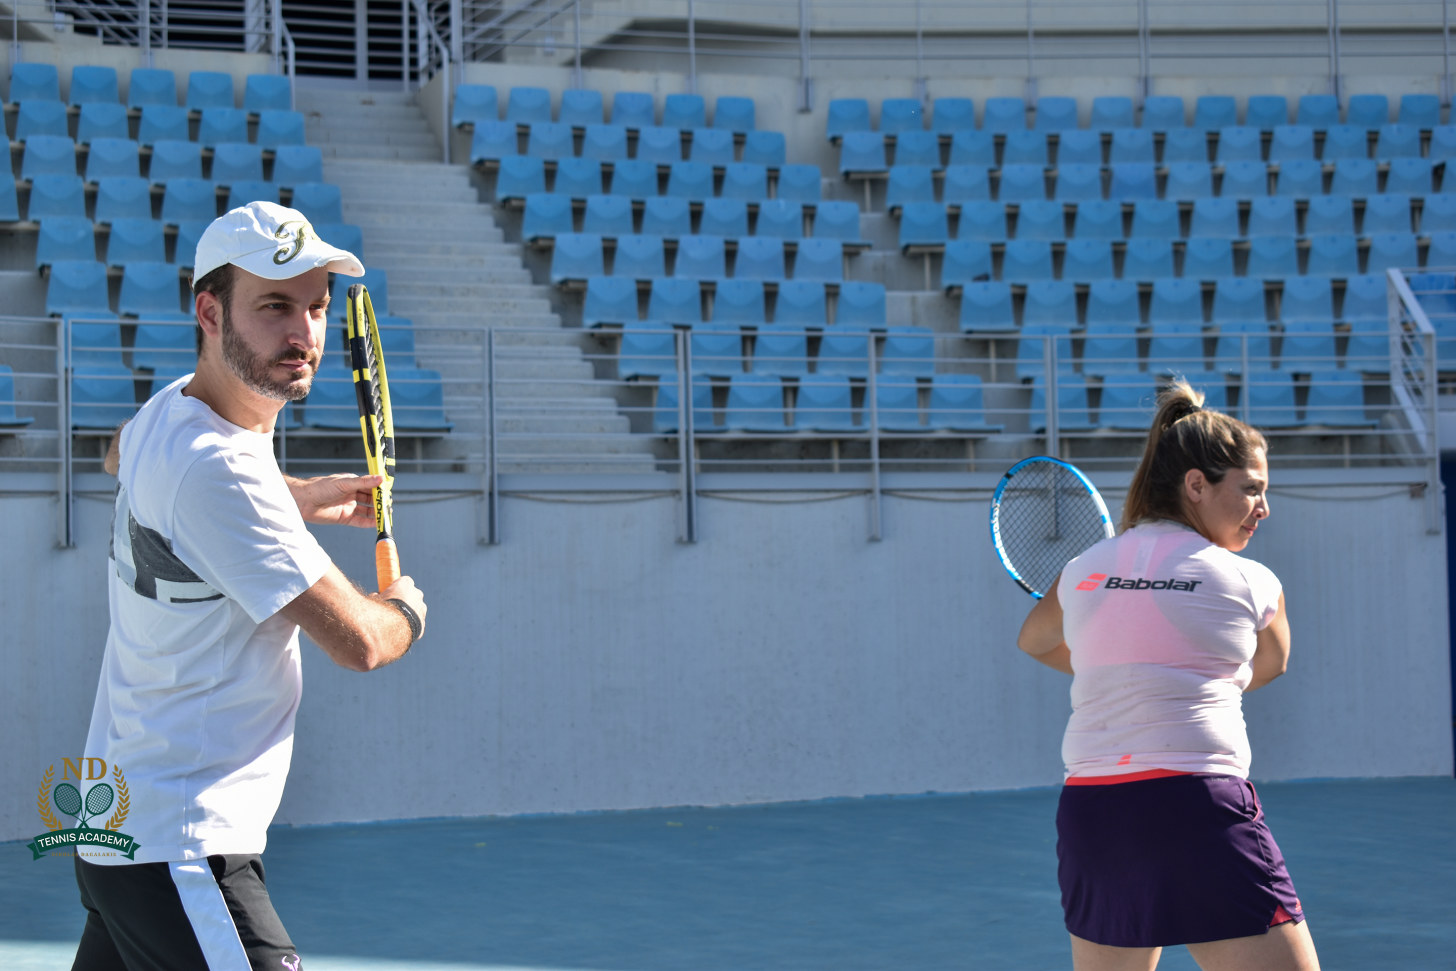 nd-tennis-academy-sportshunter-9